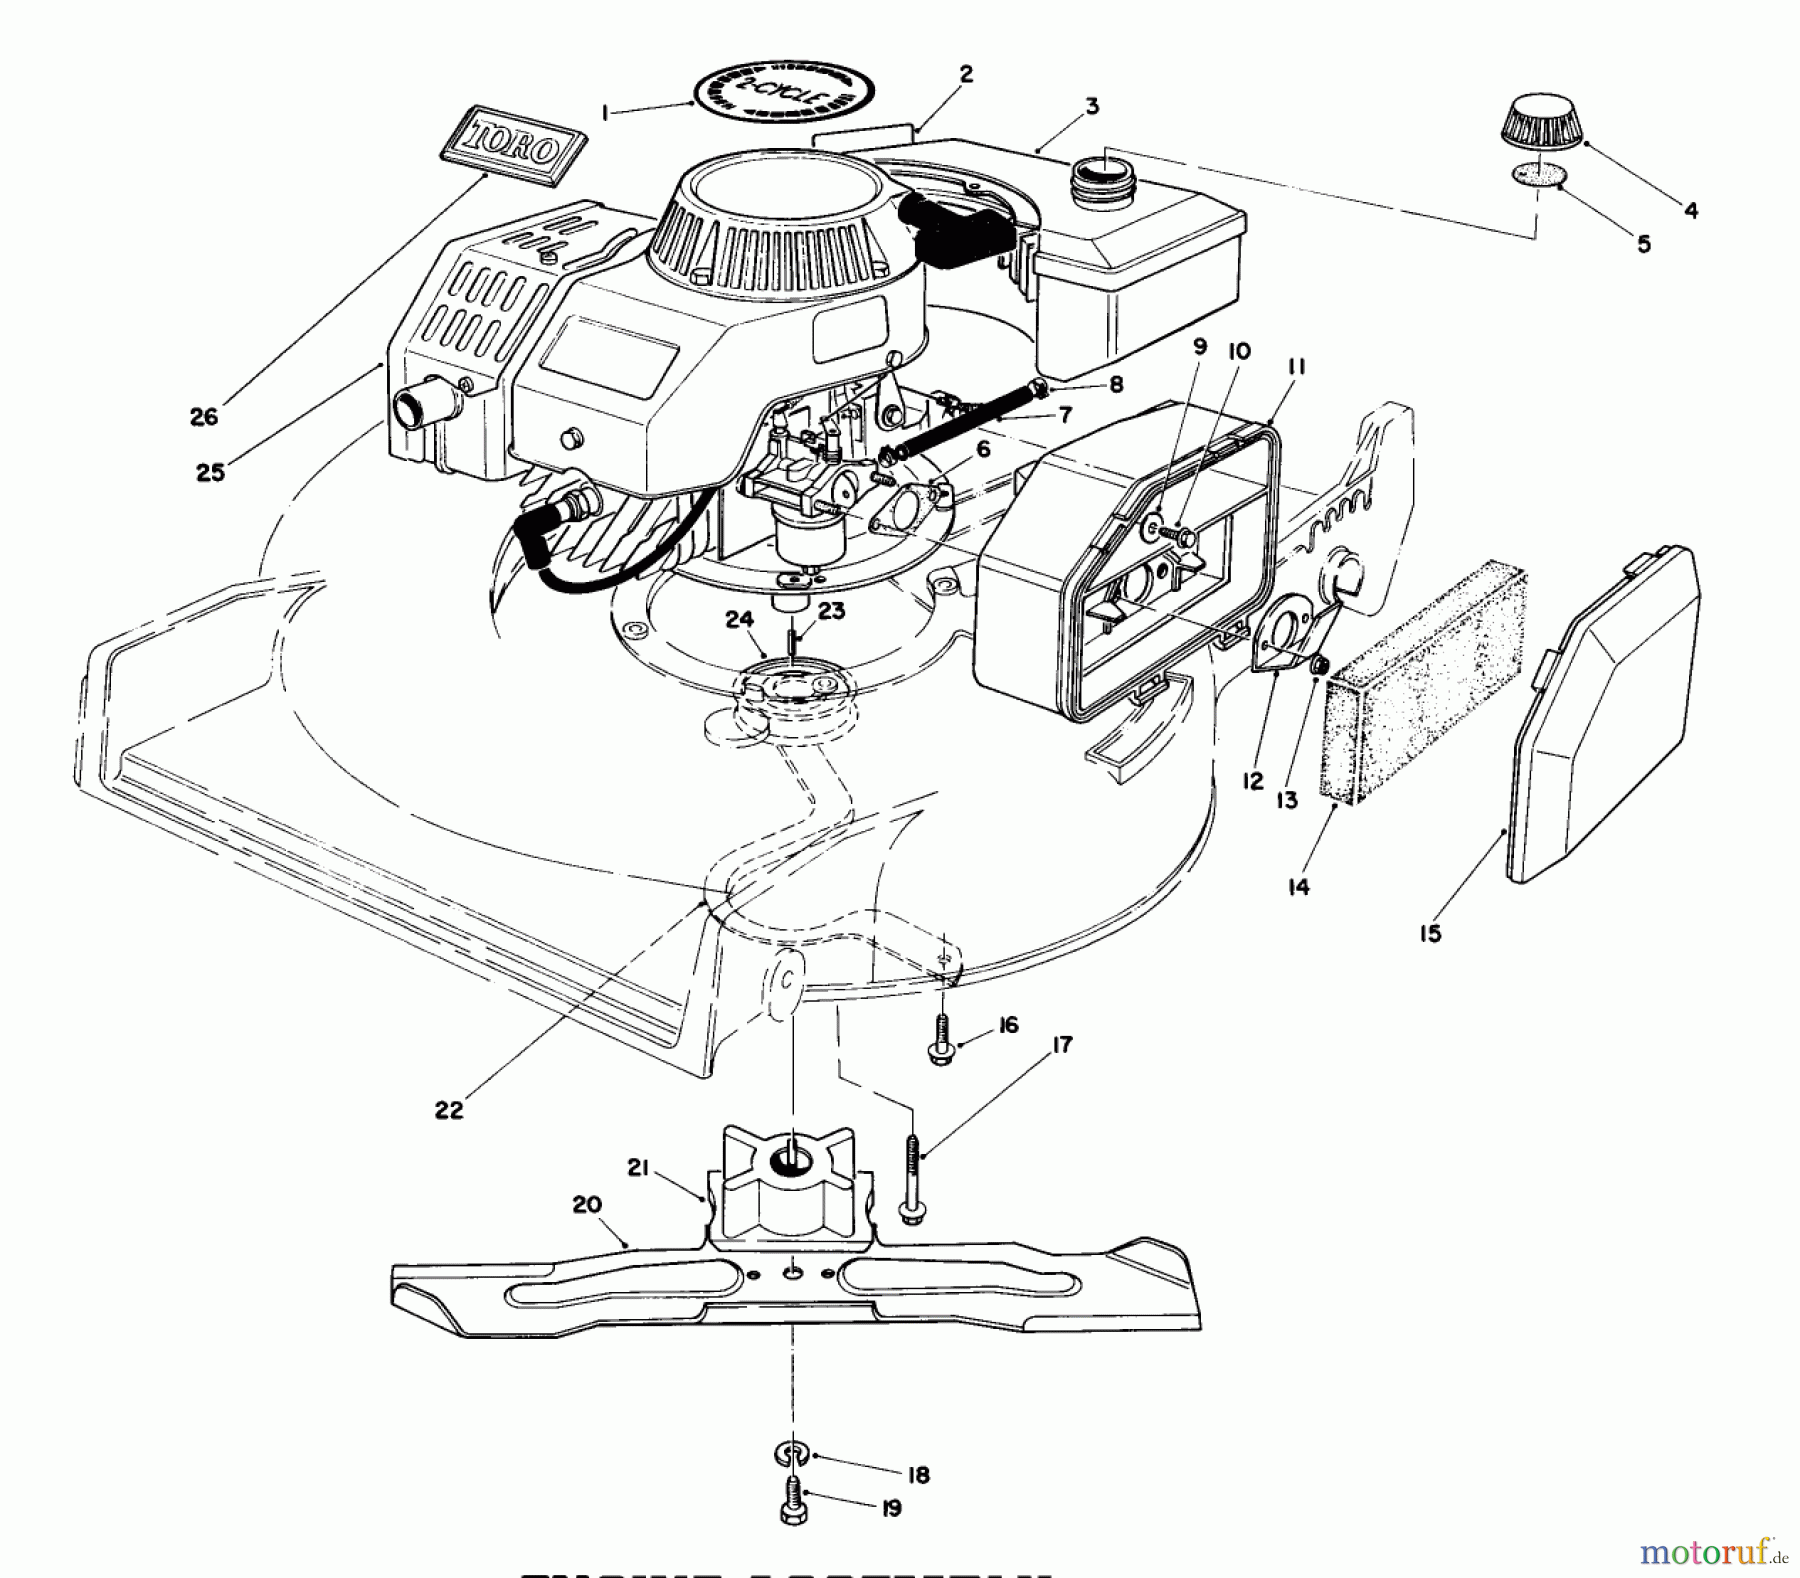  Toro Neu Mowers, Walk-Behind Seite 1 20747C - Toro Lawnmower, 1986 (6000001-6999999) ENGINE ASSEMBLY